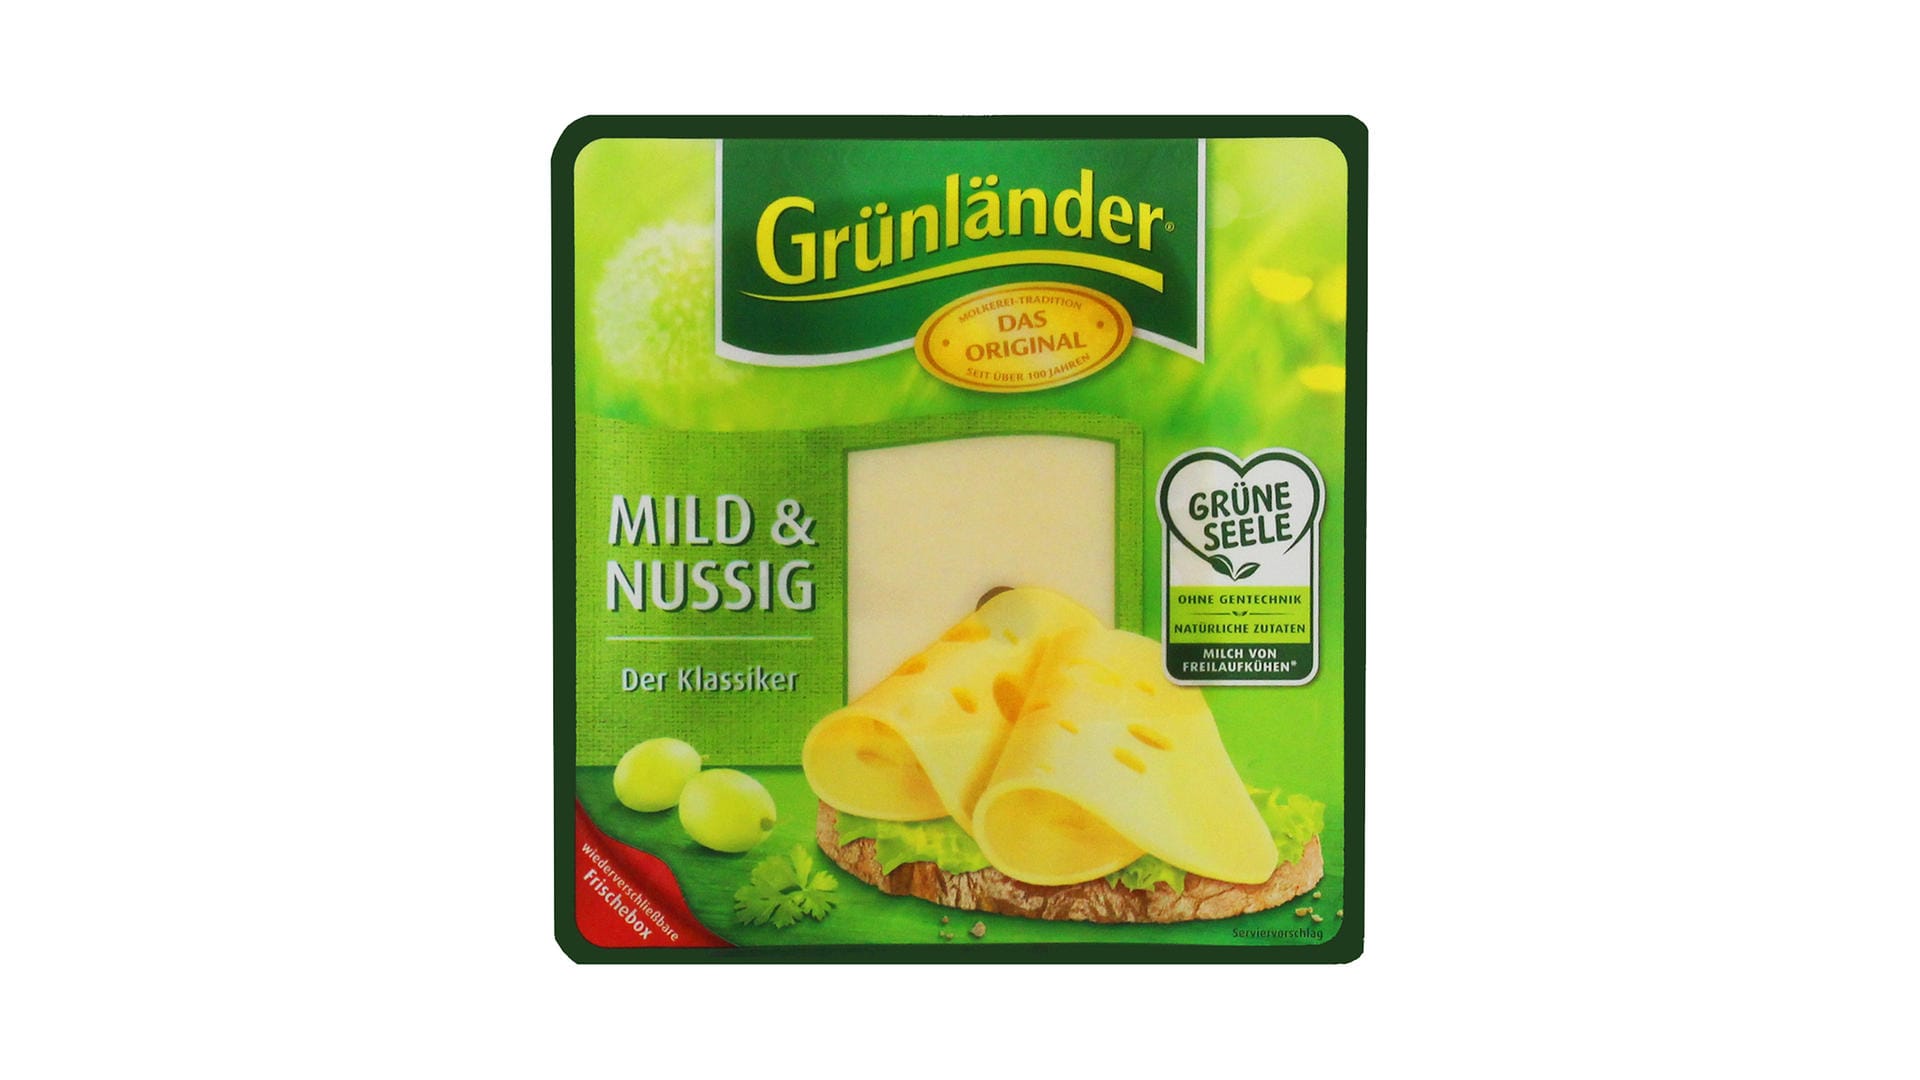 "Grünländer Käse" von Hochland verspricht "Milch von Freilaufkühen", aber die Tiere stehen im Stall.